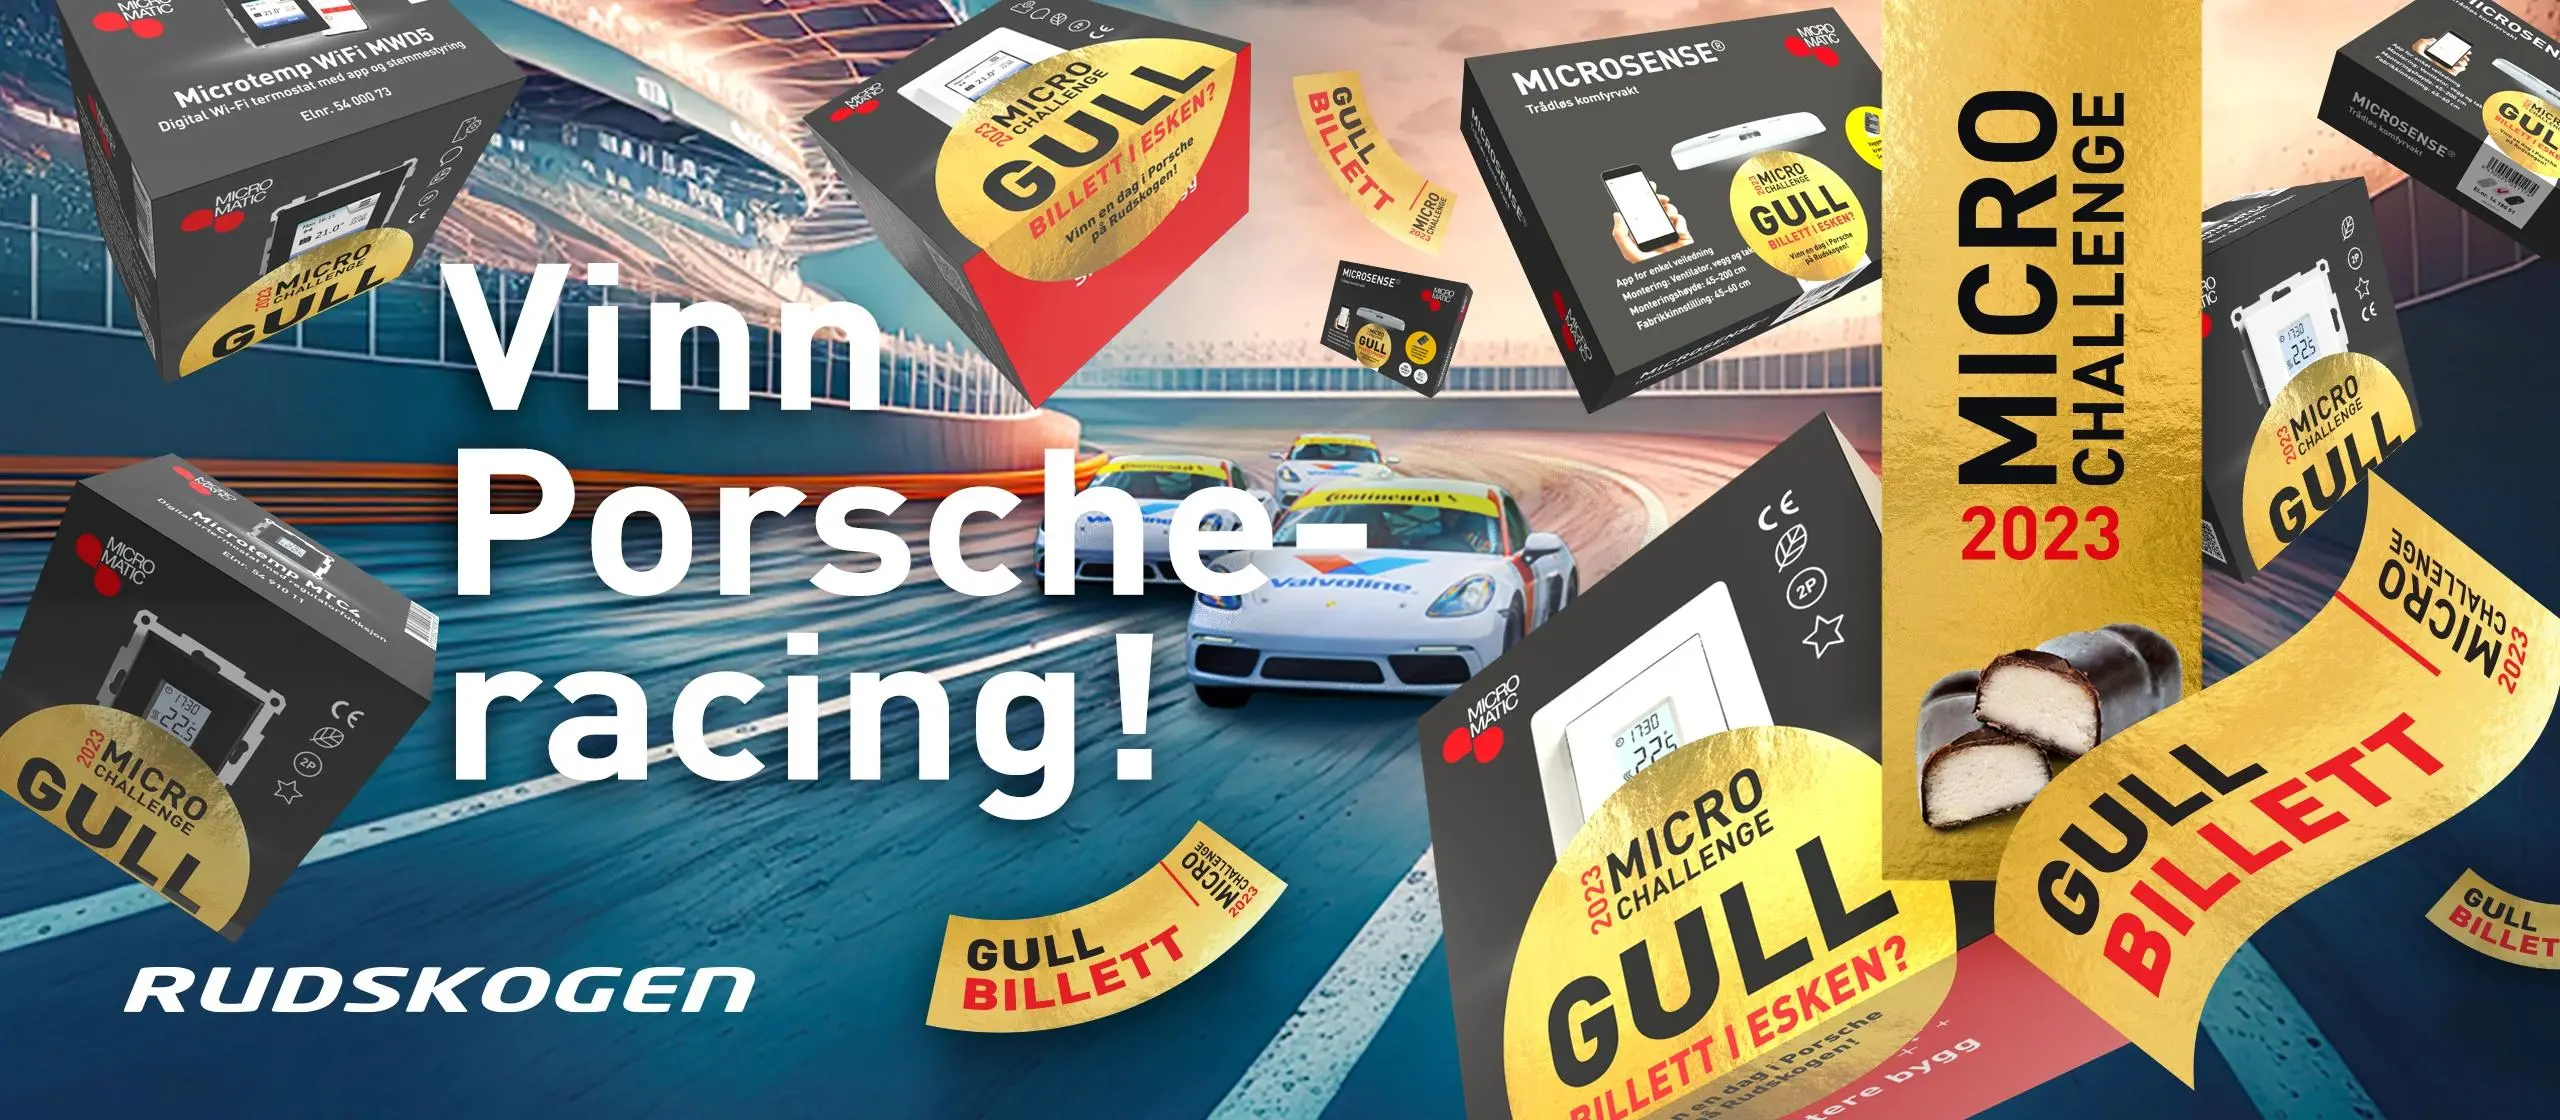 MicroChallenge – Vinn Porsche-racing på Rudskogen! (Konkurransen er nå over) 